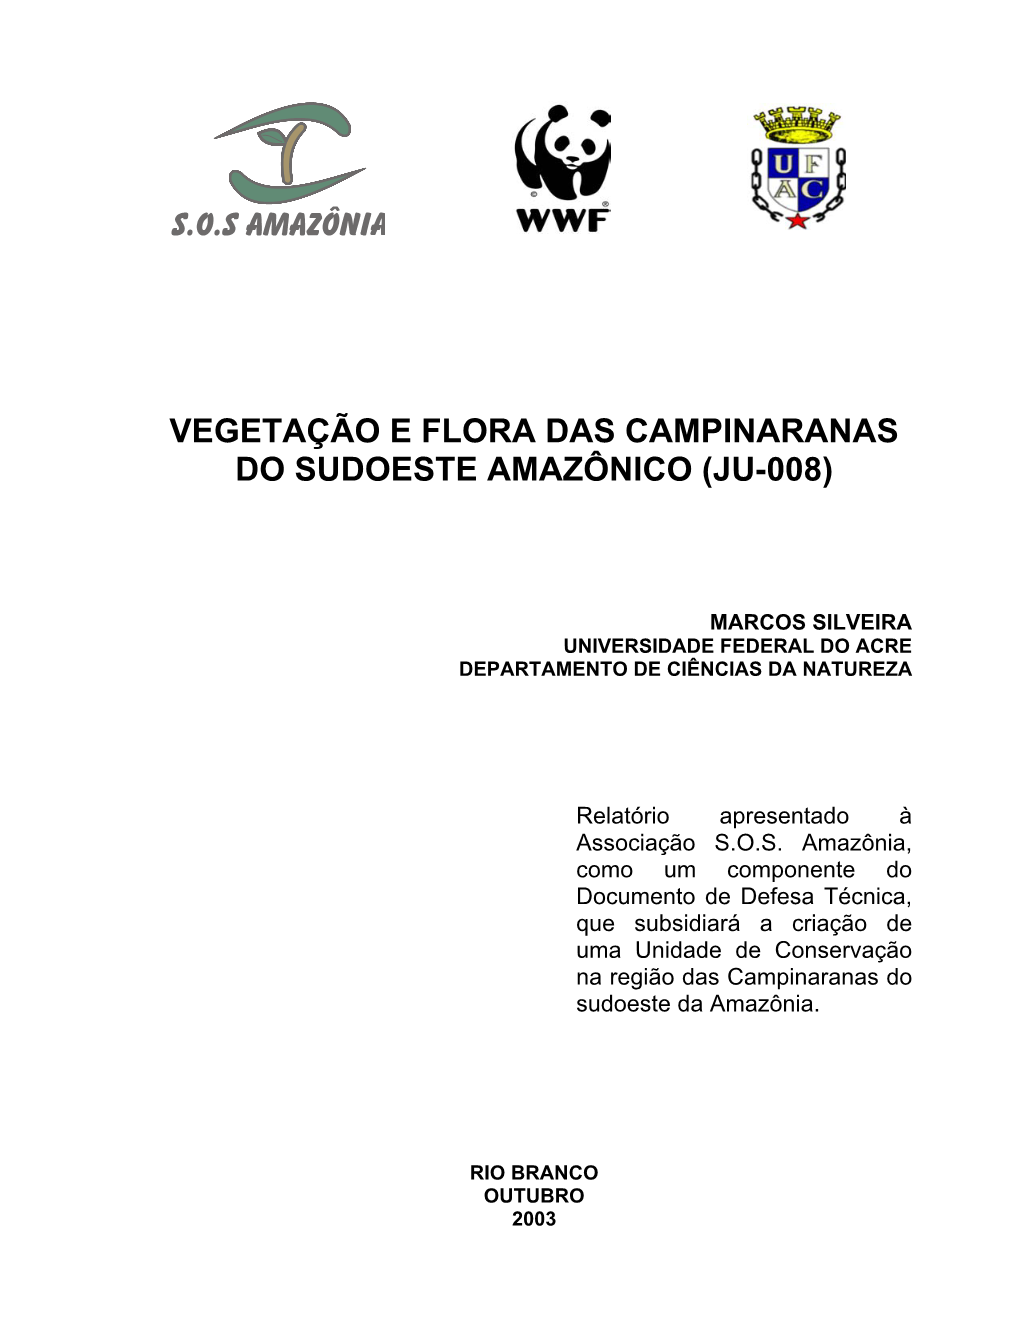 Vegetação E Flora Das Campinaranas Do Sudoeste Amazônico (JU-008)